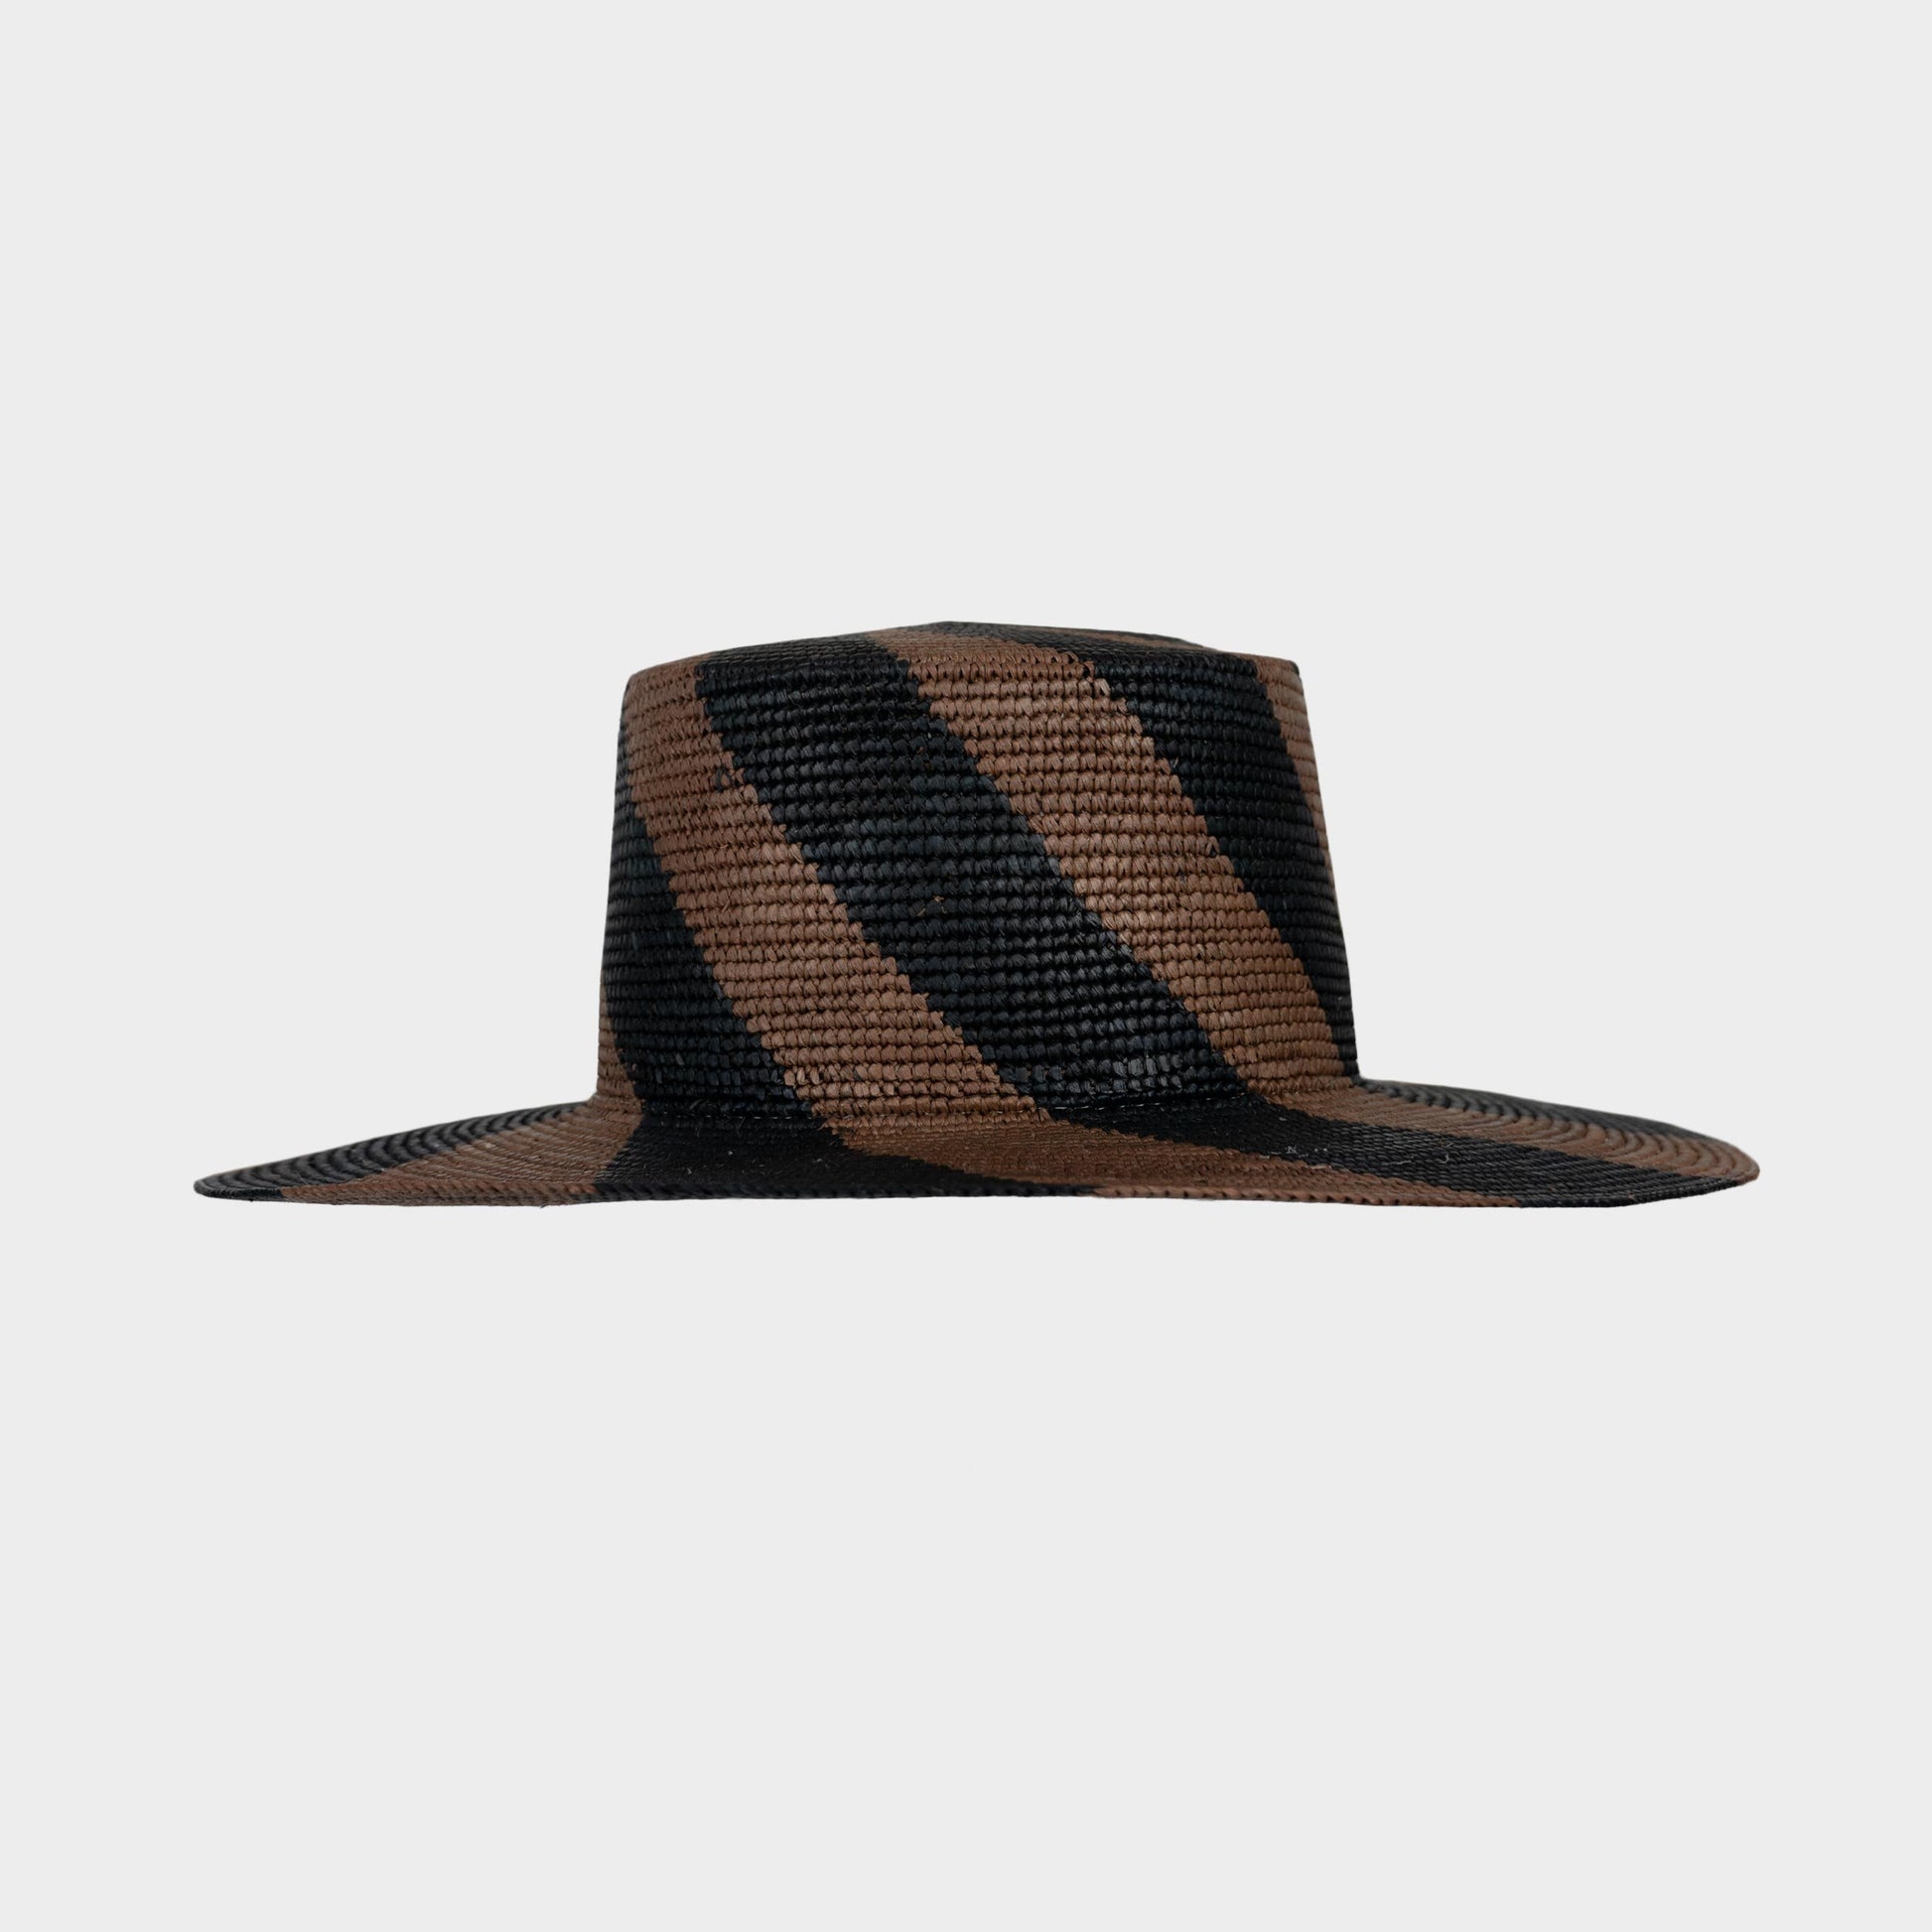 Handwoven Toquilla Straw hat in Muir